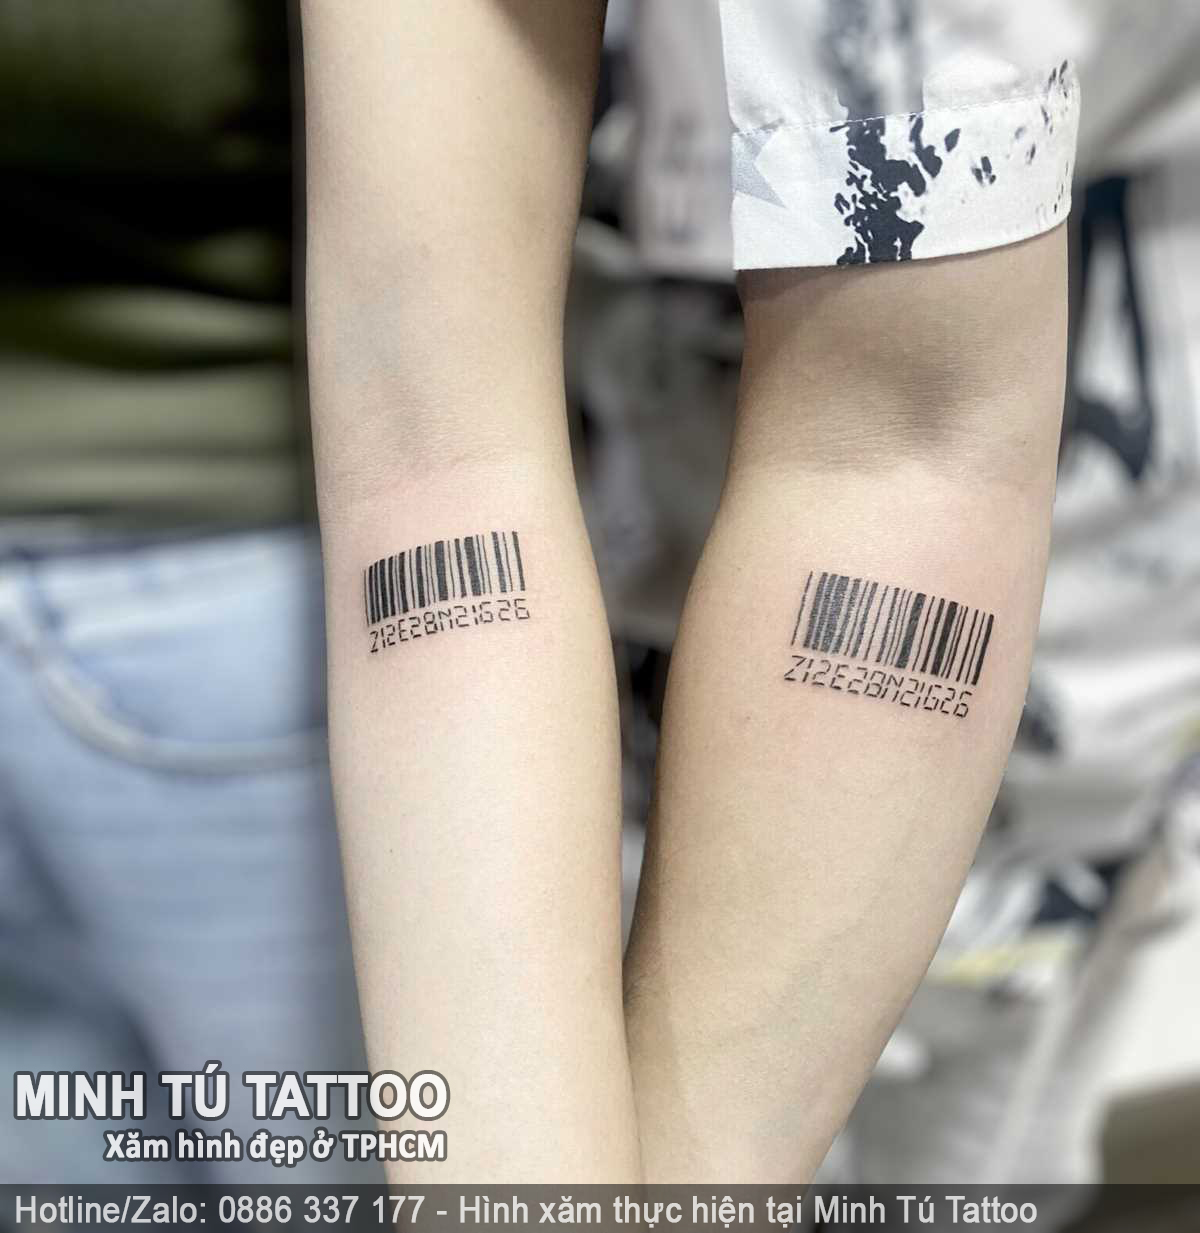 Tác phẩm hình xăm do Minh Tú Tattoo thực hiện 145